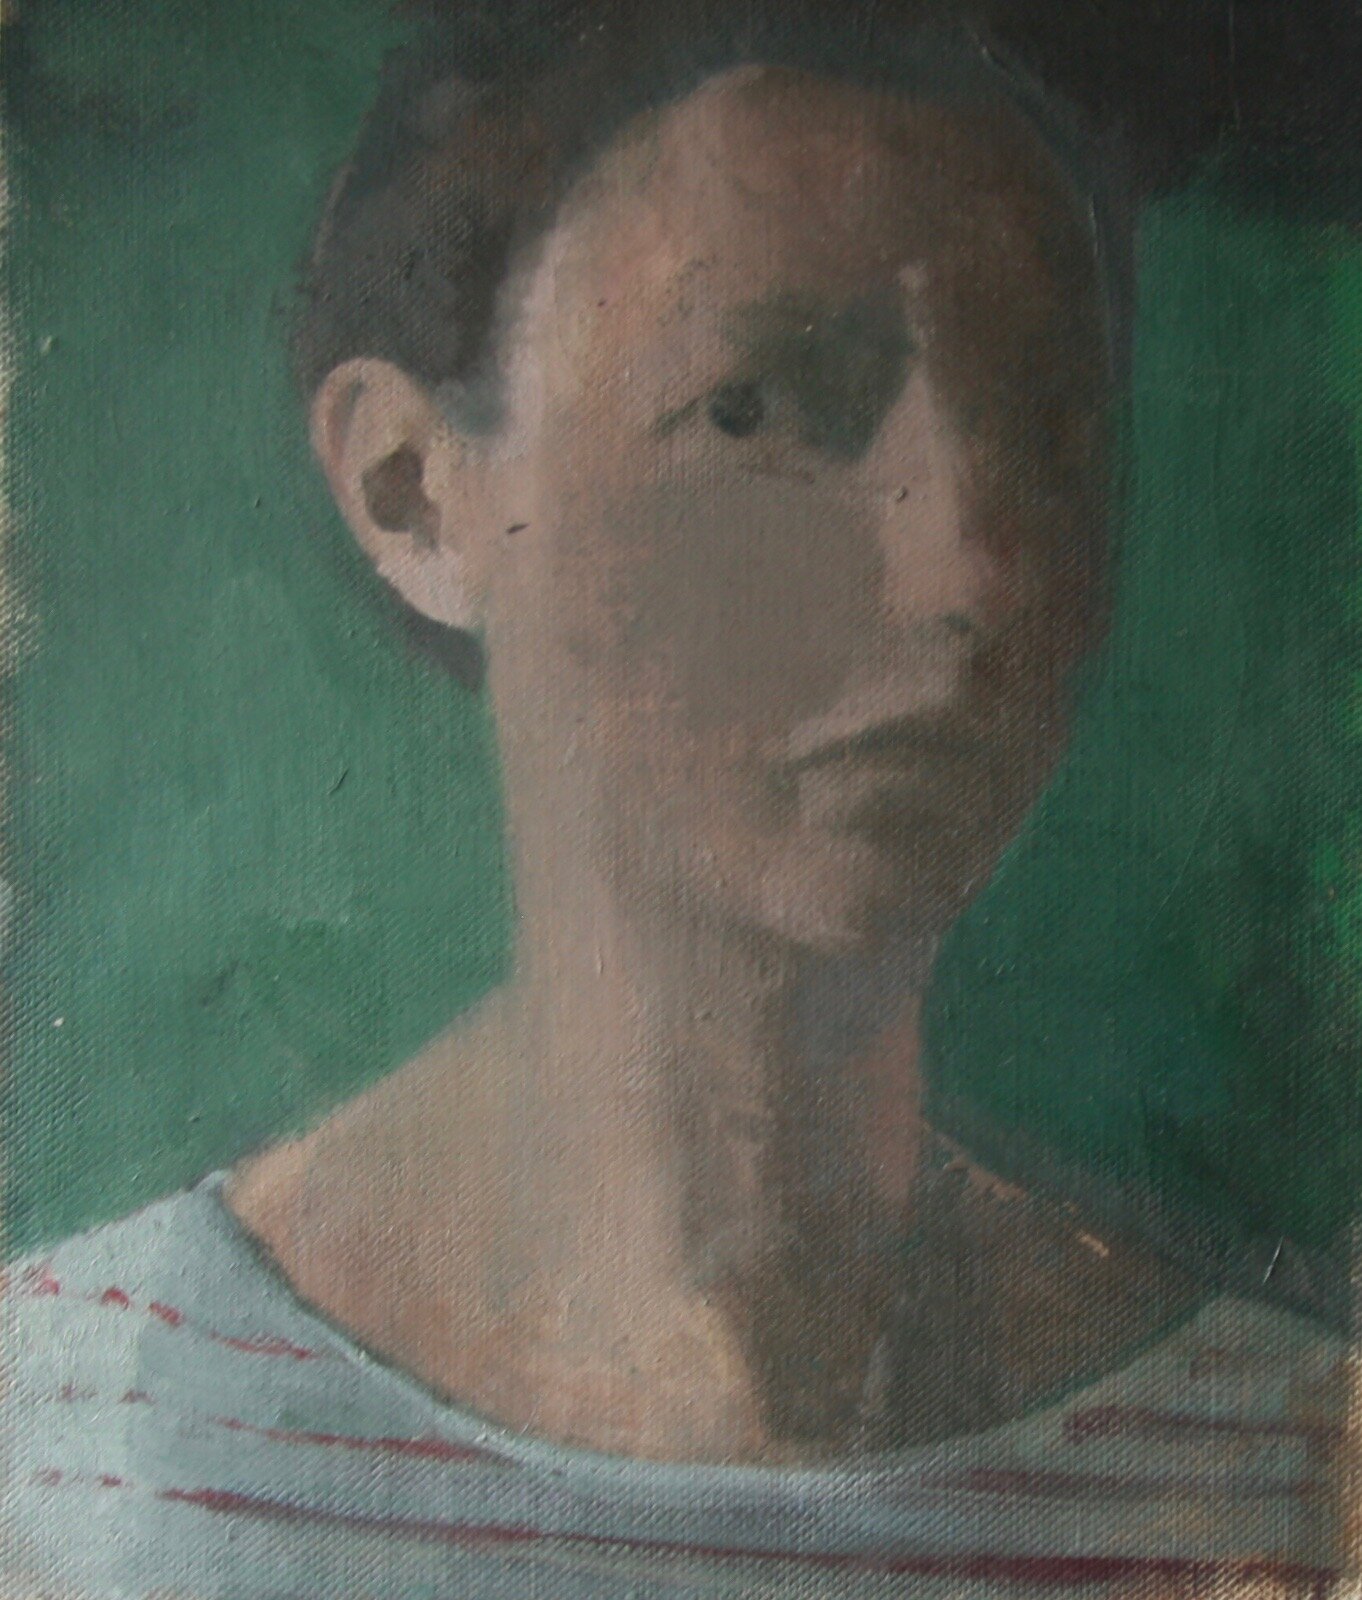 Self Portrait in Green